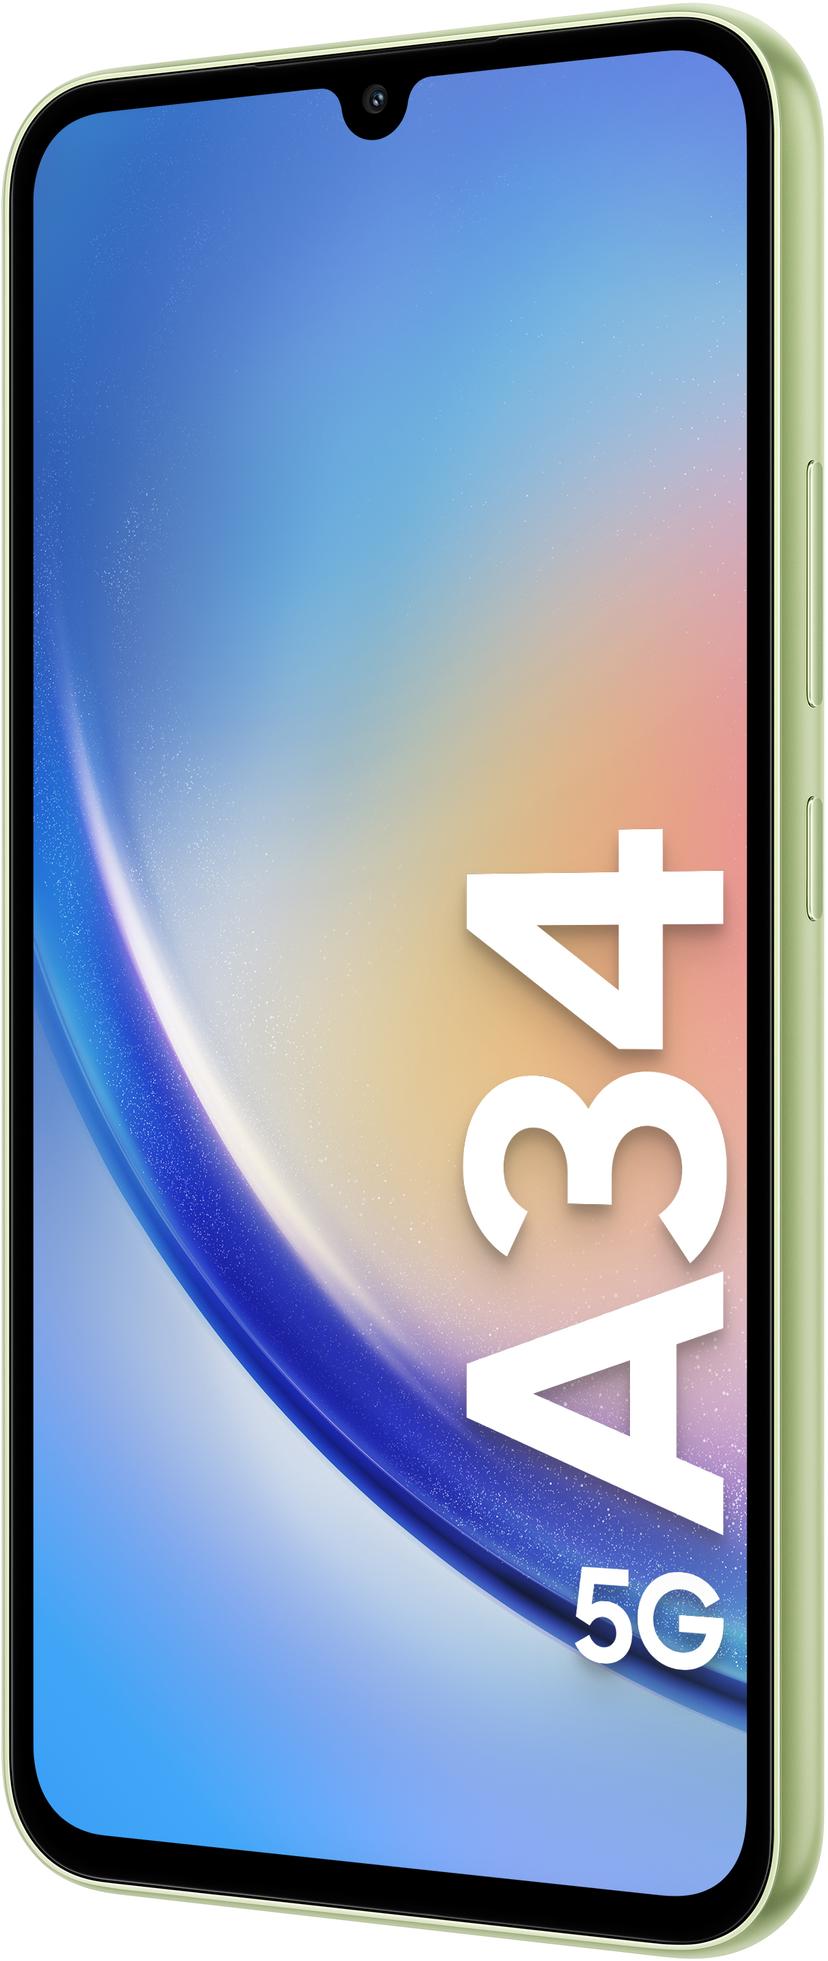 Samsung Galaxy A34 5G 128GB Lime